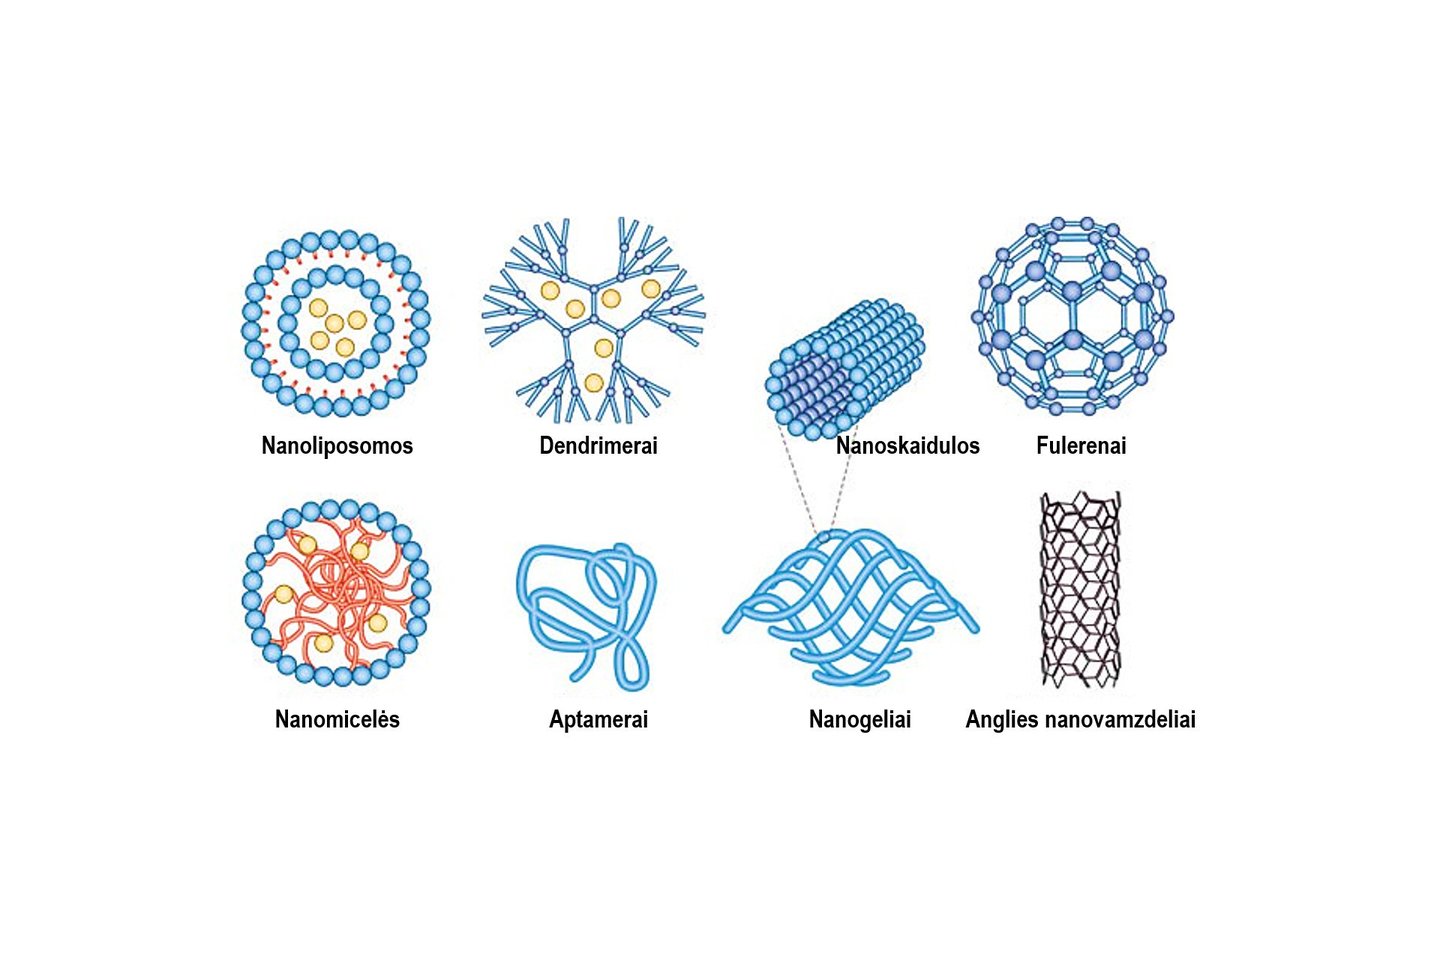  Pav.1: nanodalelės gali būti įvairių formų, struktūrų bei dydžių.